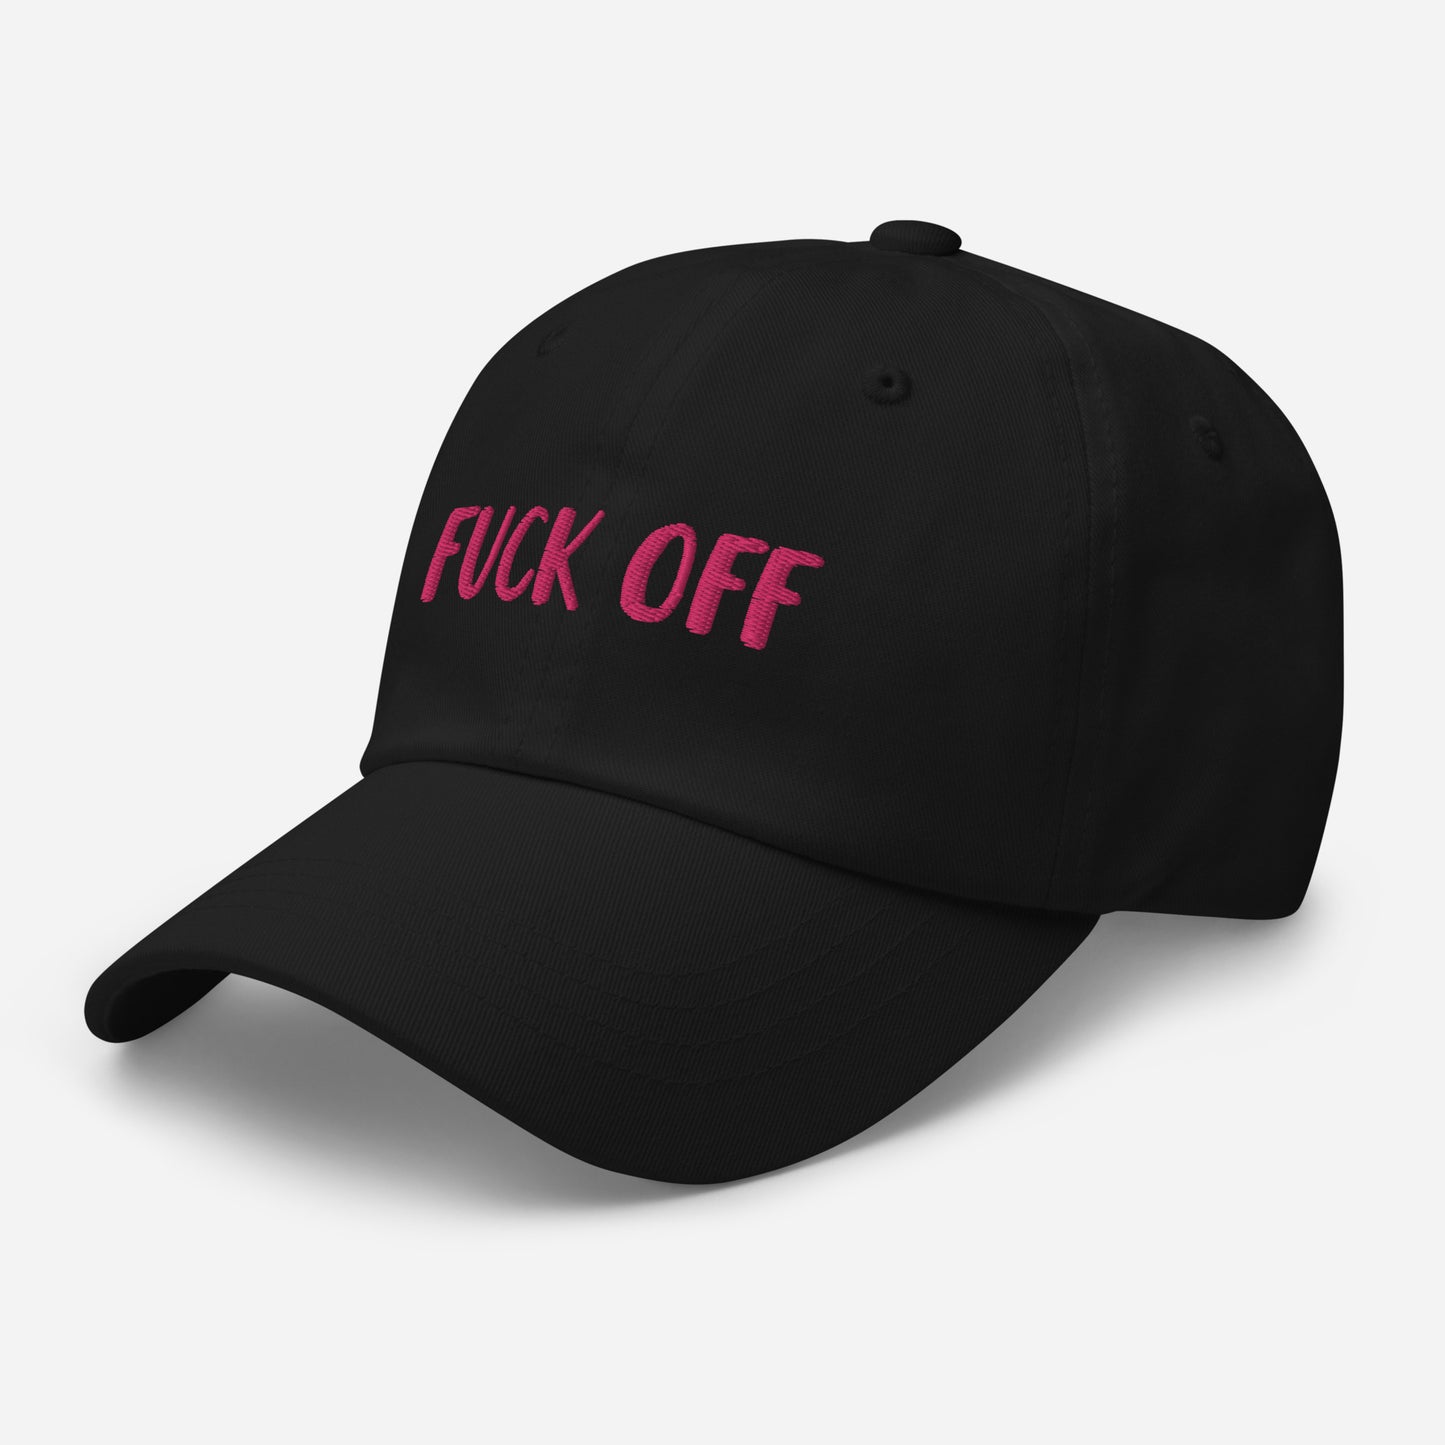 Fuck off hat